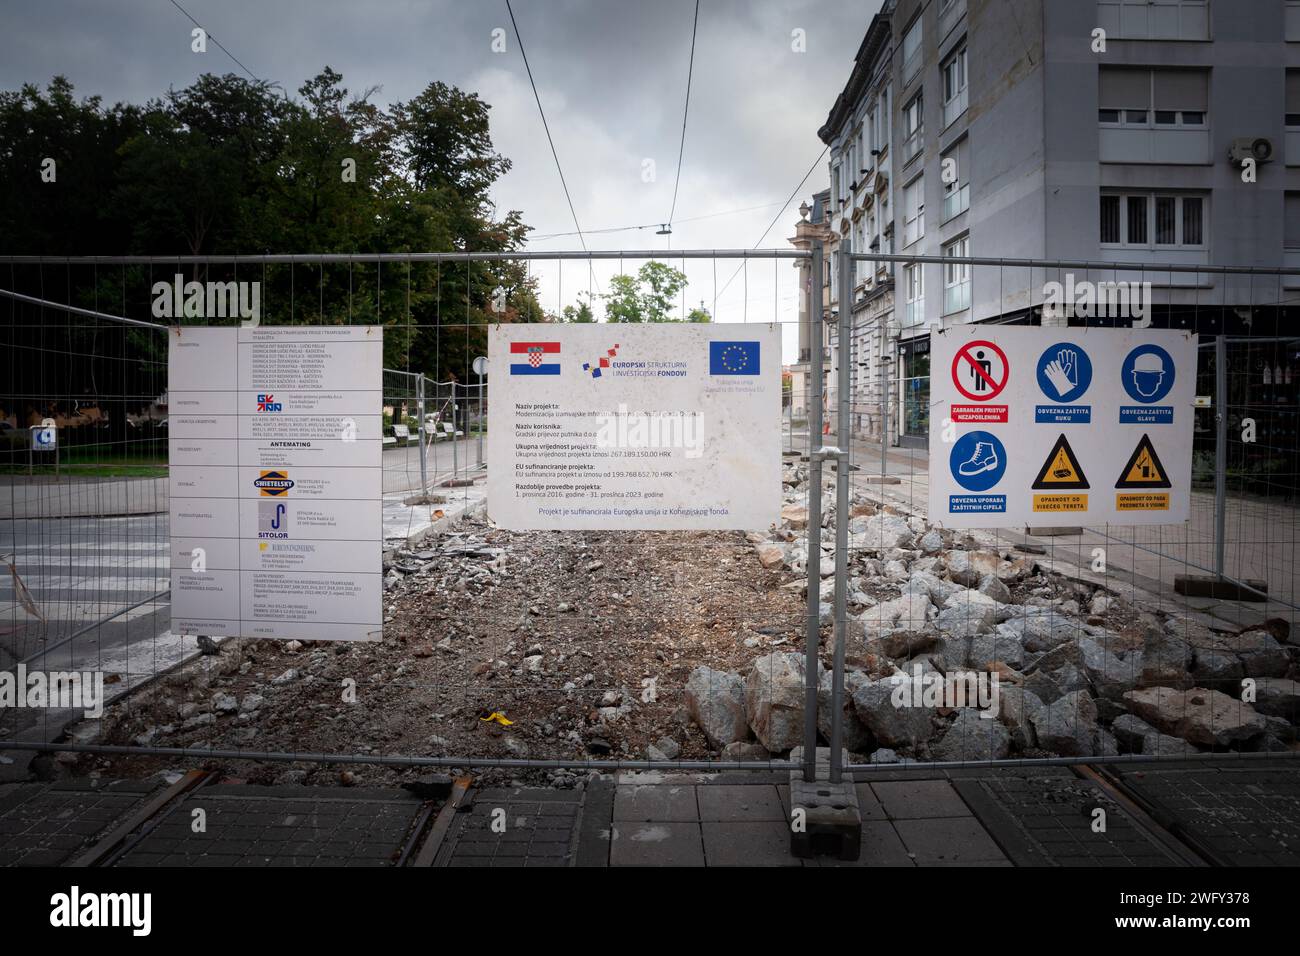 Abbildung eines Schildes, das anzeigt, dass ein Wiederaufbauprojekt von der kroatischen Regierung und der Europäischen Union in Kroatien, osijek, finanziert wird. Stockfoto